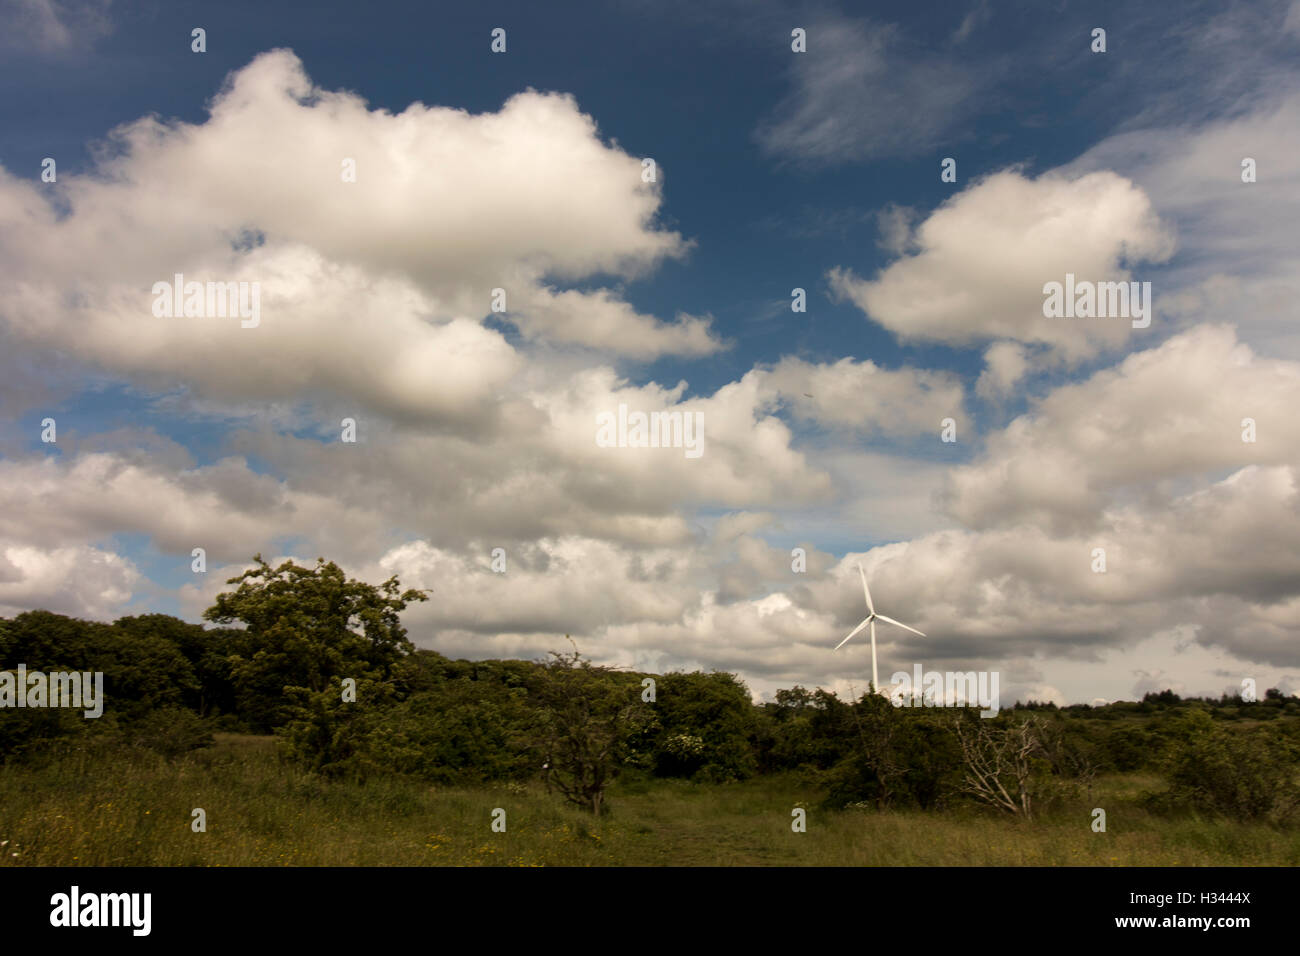 Weitwinkel, Feld mit Bäumen und ziemlich blauer Himmel mit weißen flauschigen Wolken und eine Windmühle am Horizont Stockfoto